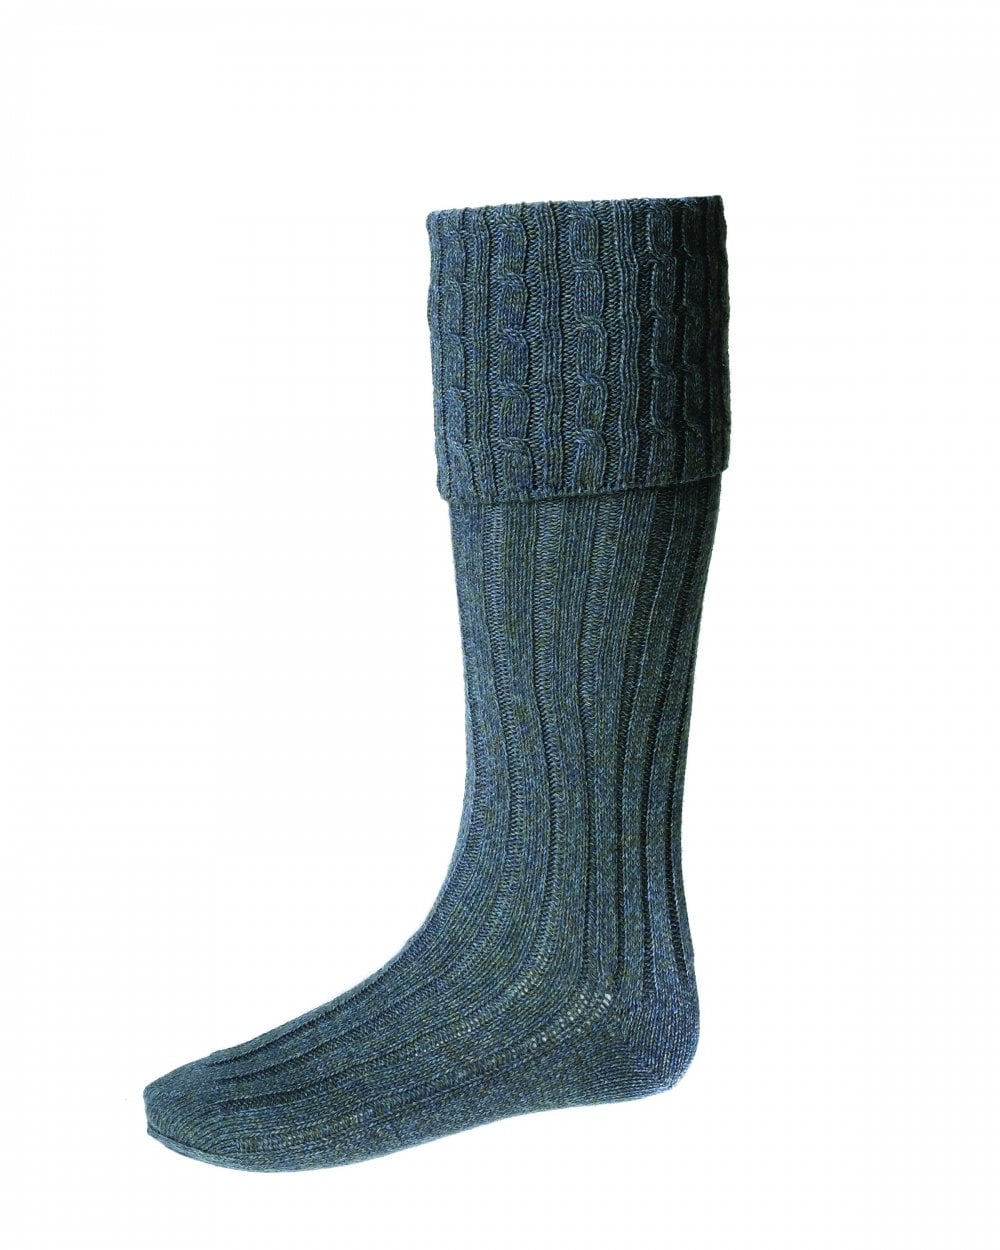 Harris Merino Wool Kilt Socks by House of Cheviot - Blue Lovat